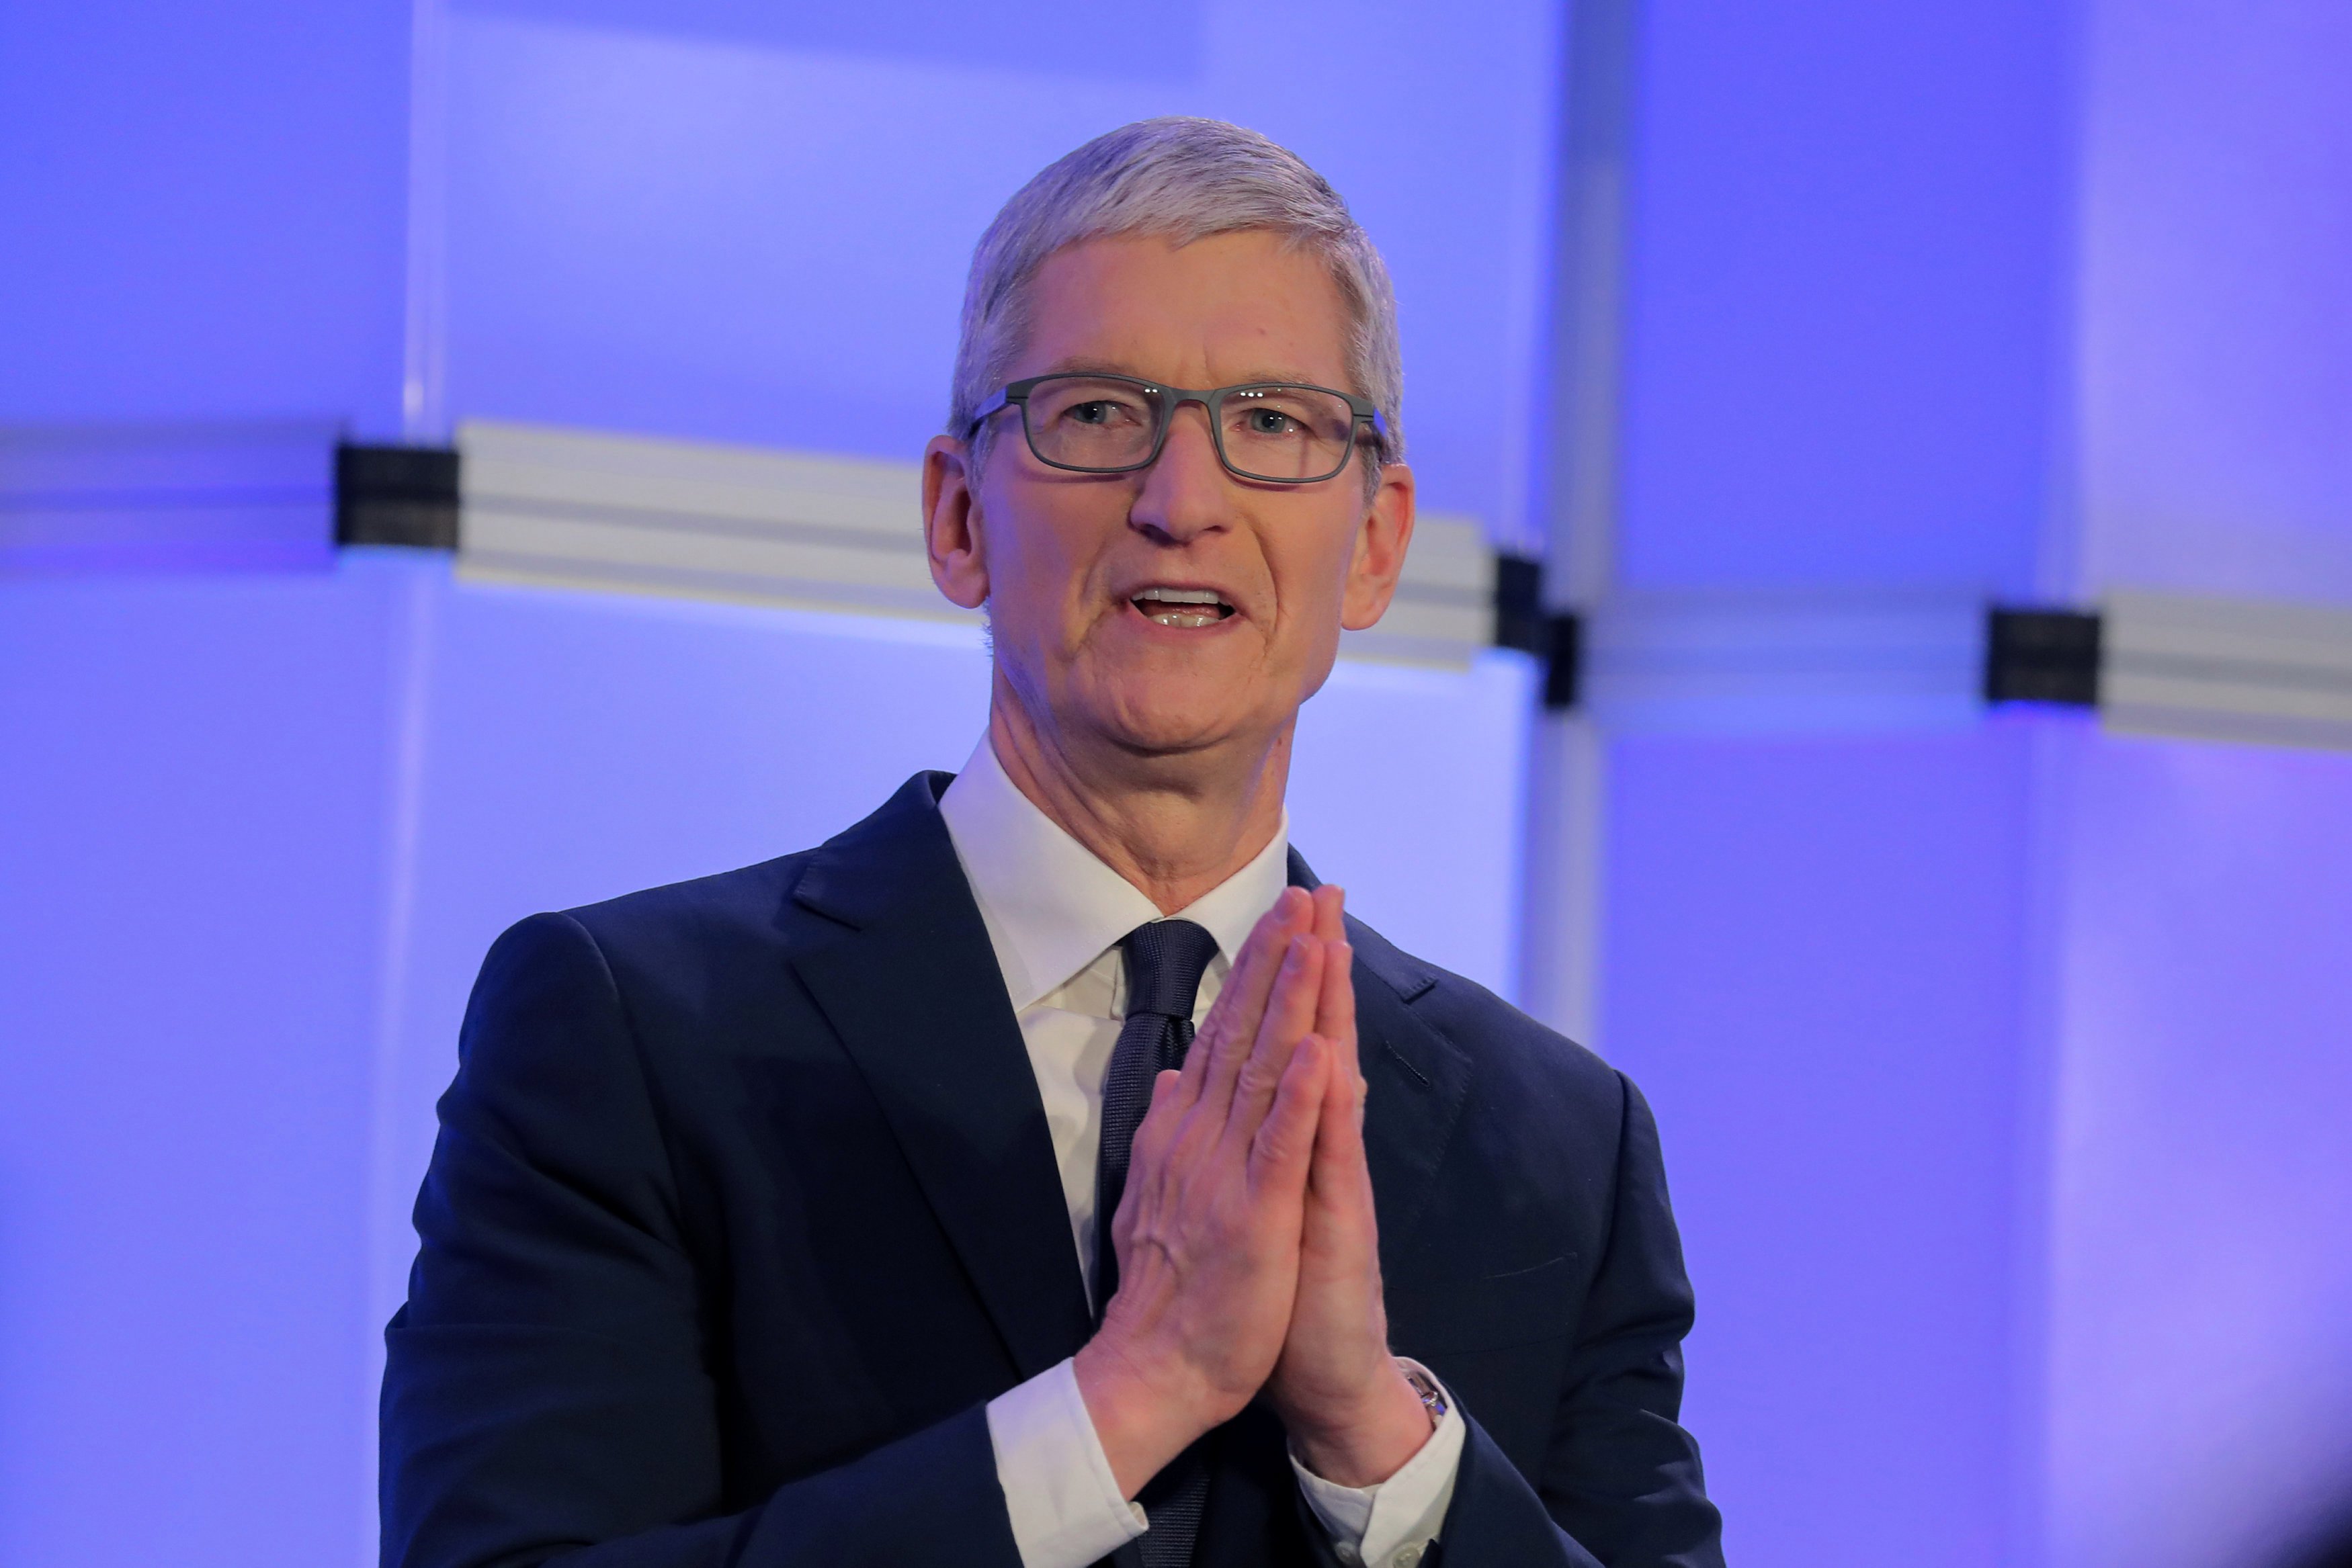  Apple  Генеральный директор Тим Кук назвал конфиденциальность «правом человека» на фоне растущих проблем безопасности в мире